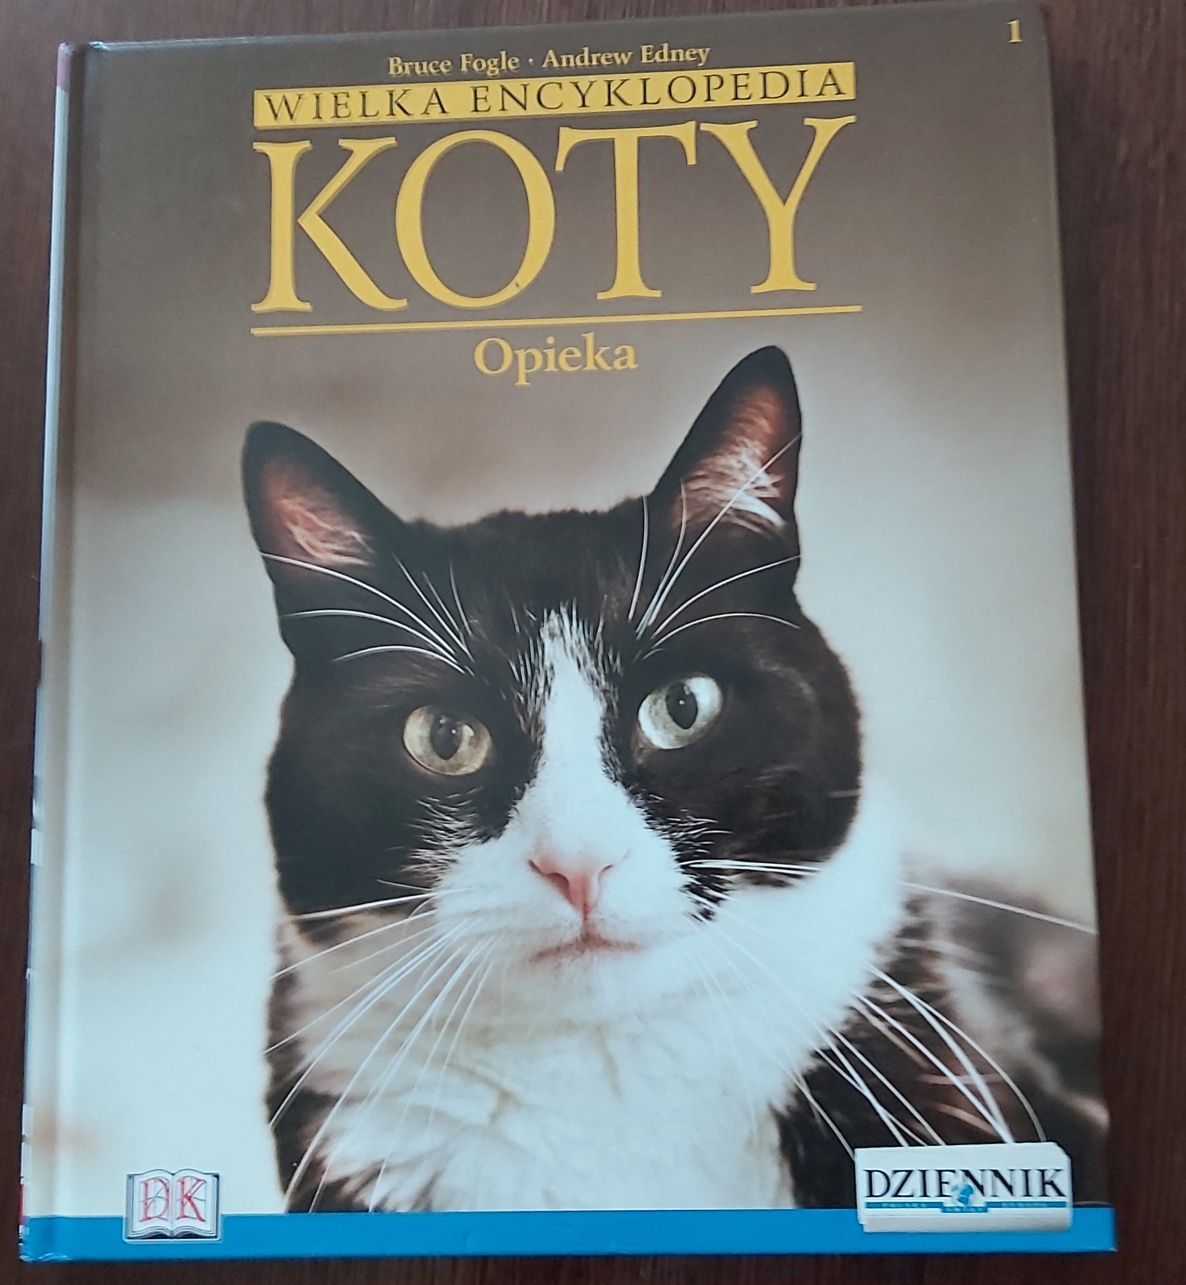 Koty-opieka książka album w twardej oprawie